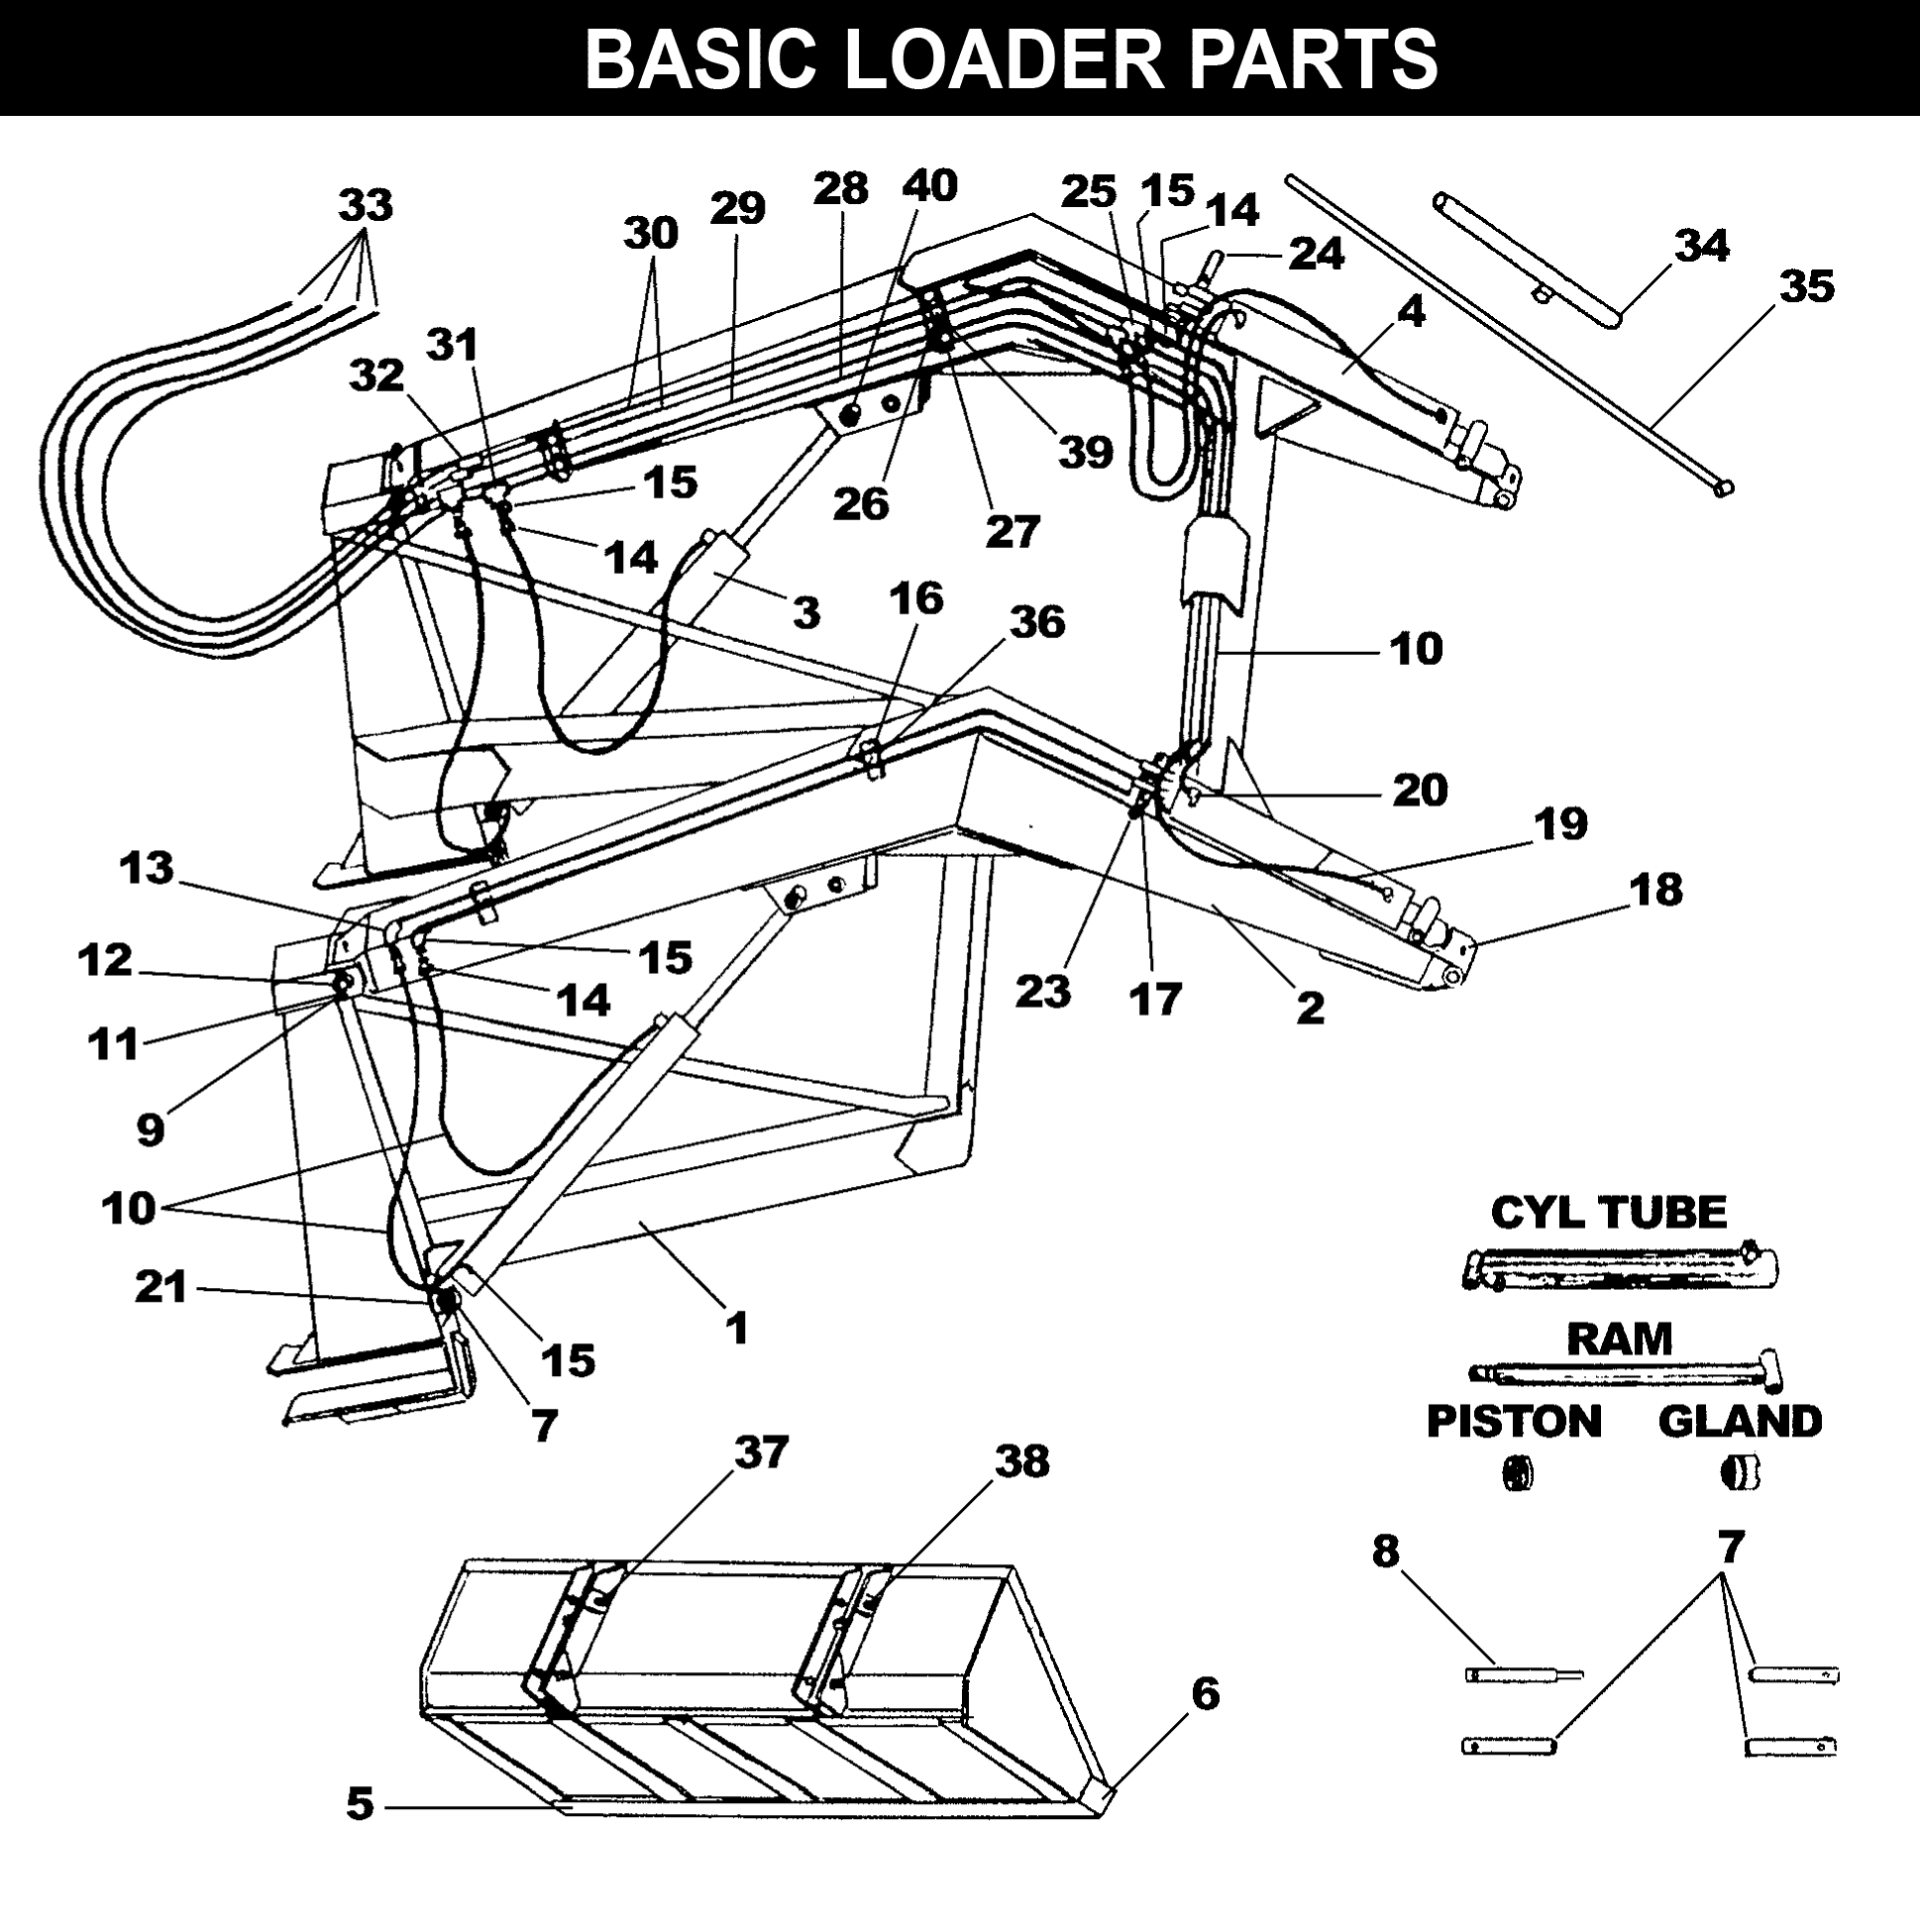 WL-40 Basic Loader Parts